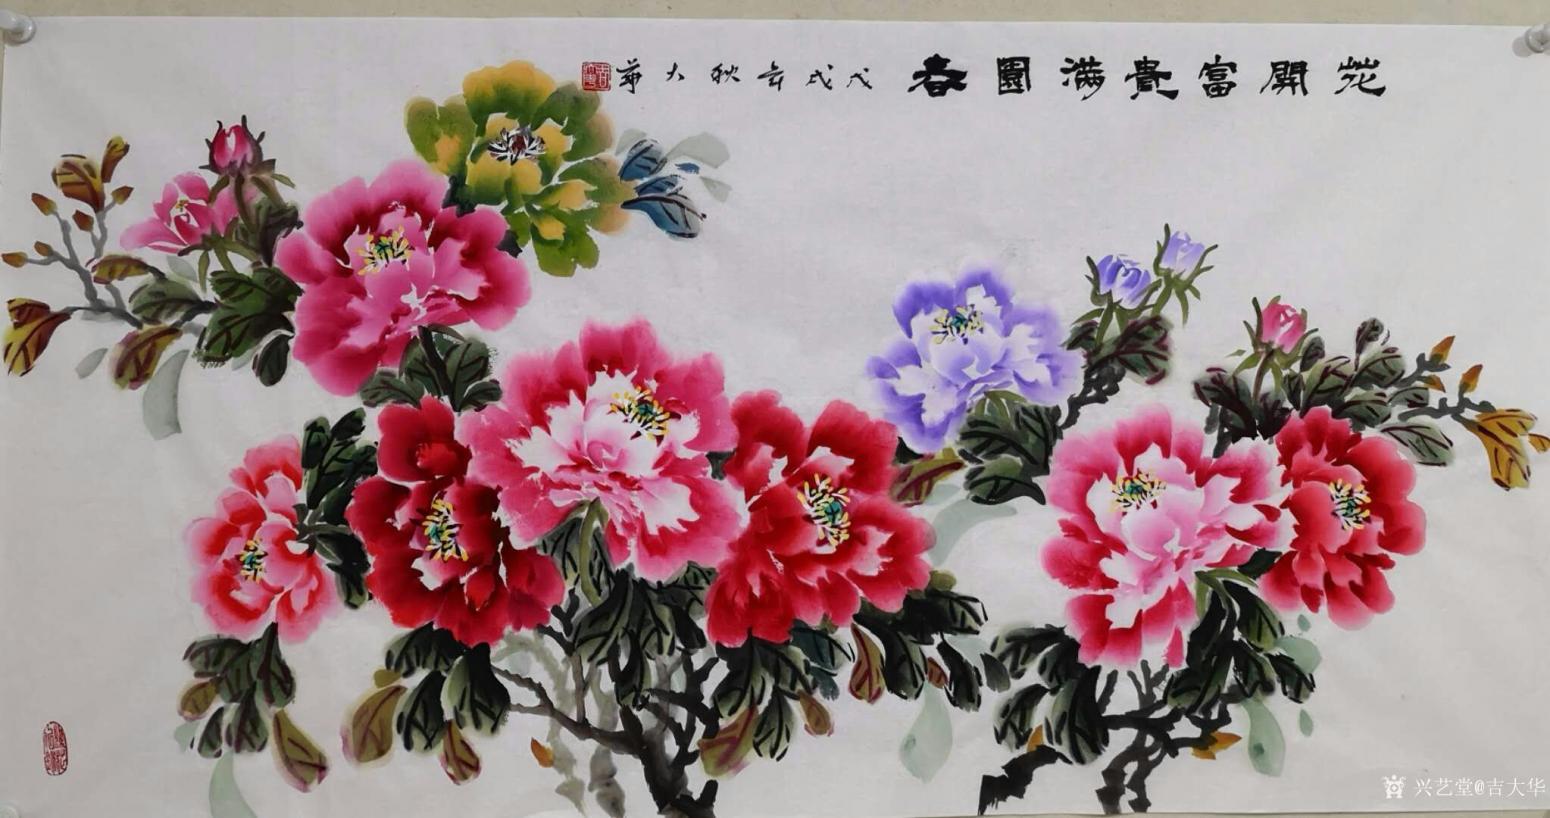 吉大华国画作品《花开富贵满园春》